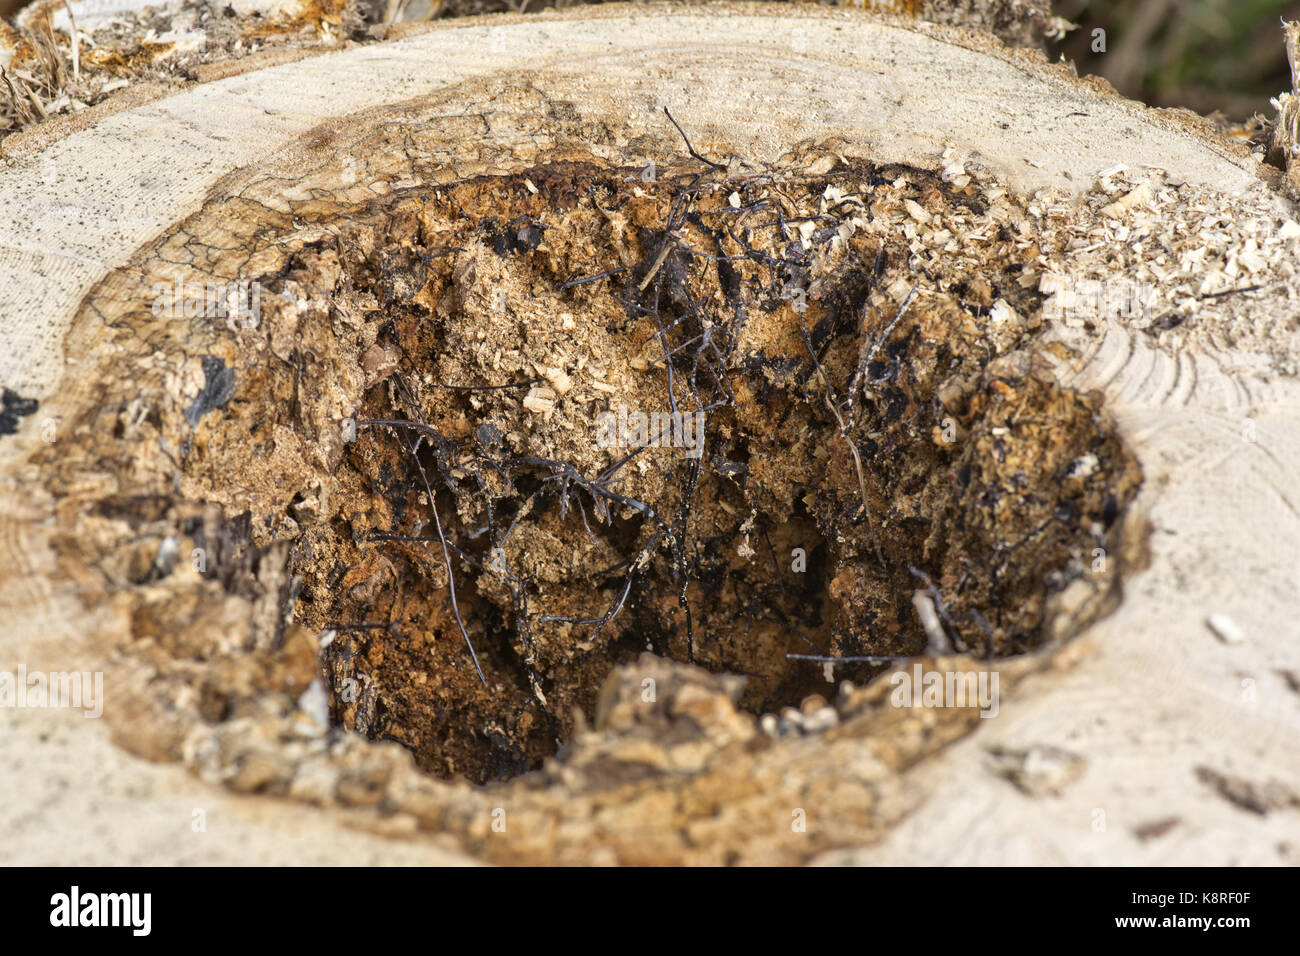 Negro o micótica rhizomorphs cordones de miel, hongo armillaria mellea, formado sobre los enfermos y muertos, núcleo de un árbol podrido, Berkshire, marzo Foto de stock